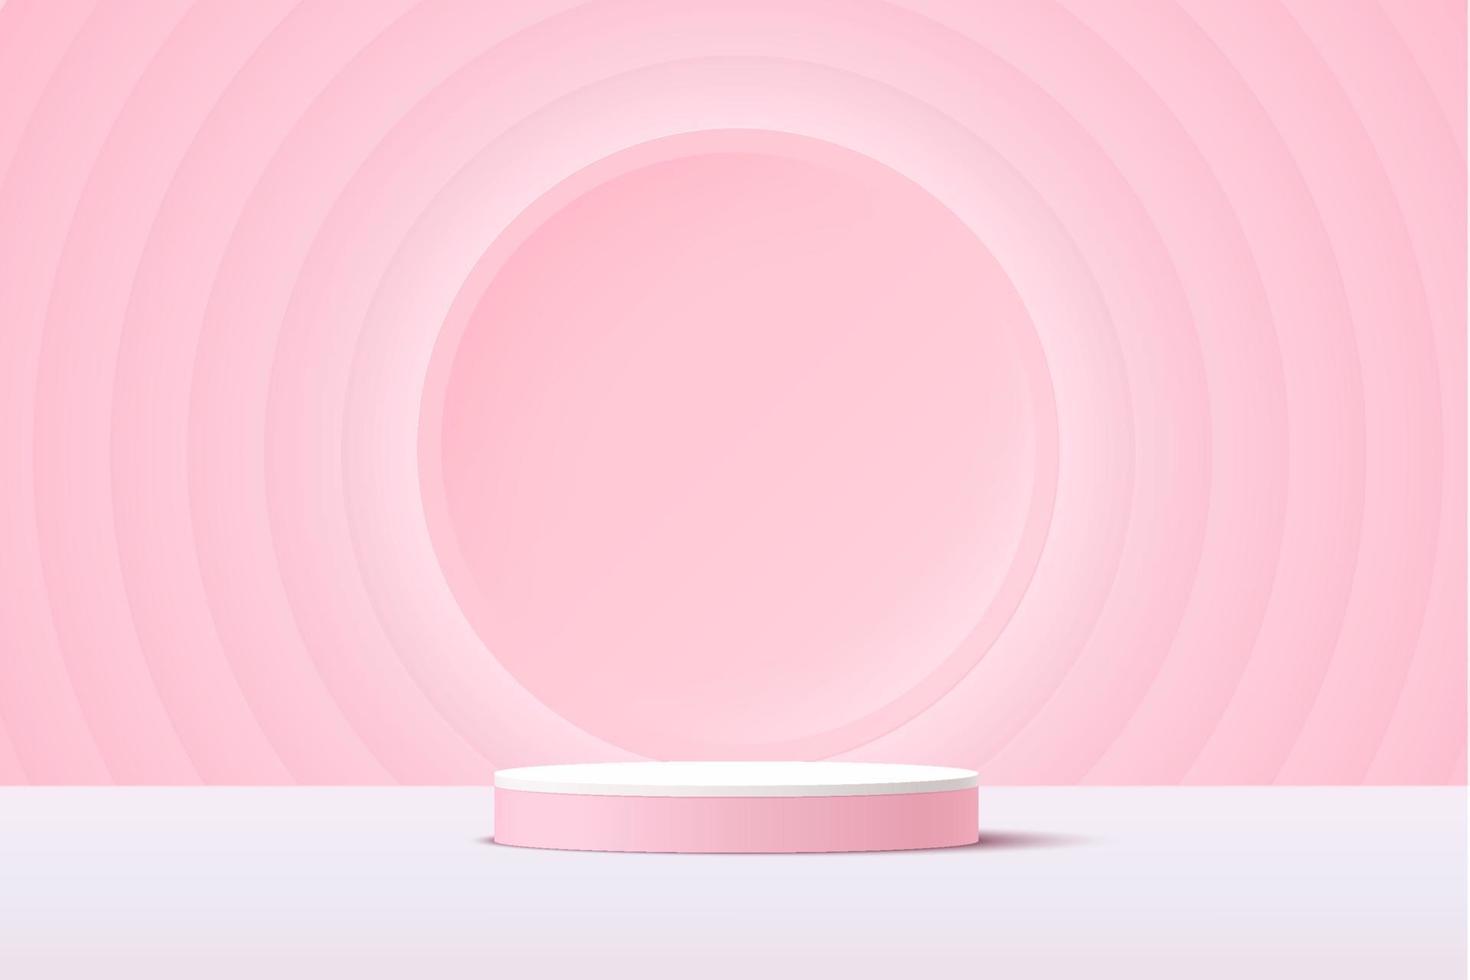 abstract wit en roze 3d cilinder voetstuk podium met gloeiende lichtroze cirkel achtergrond. zoete roze cirkelpatroonscène voor productpresentatie. vector geometrische rendering platform.